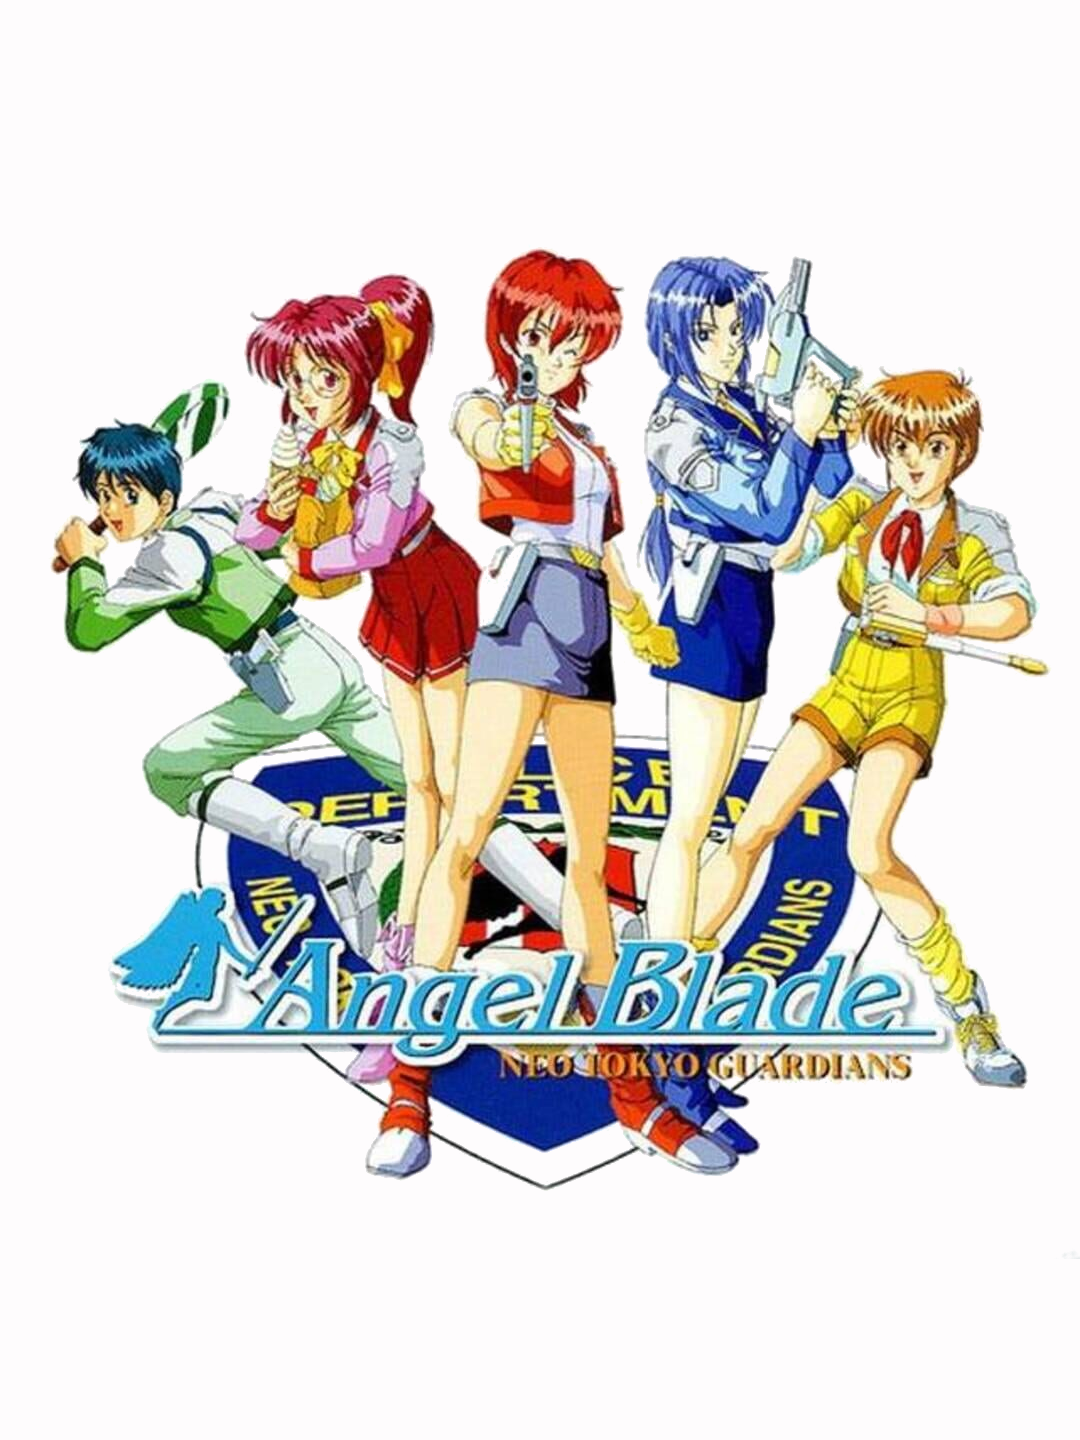 Angle blade anime